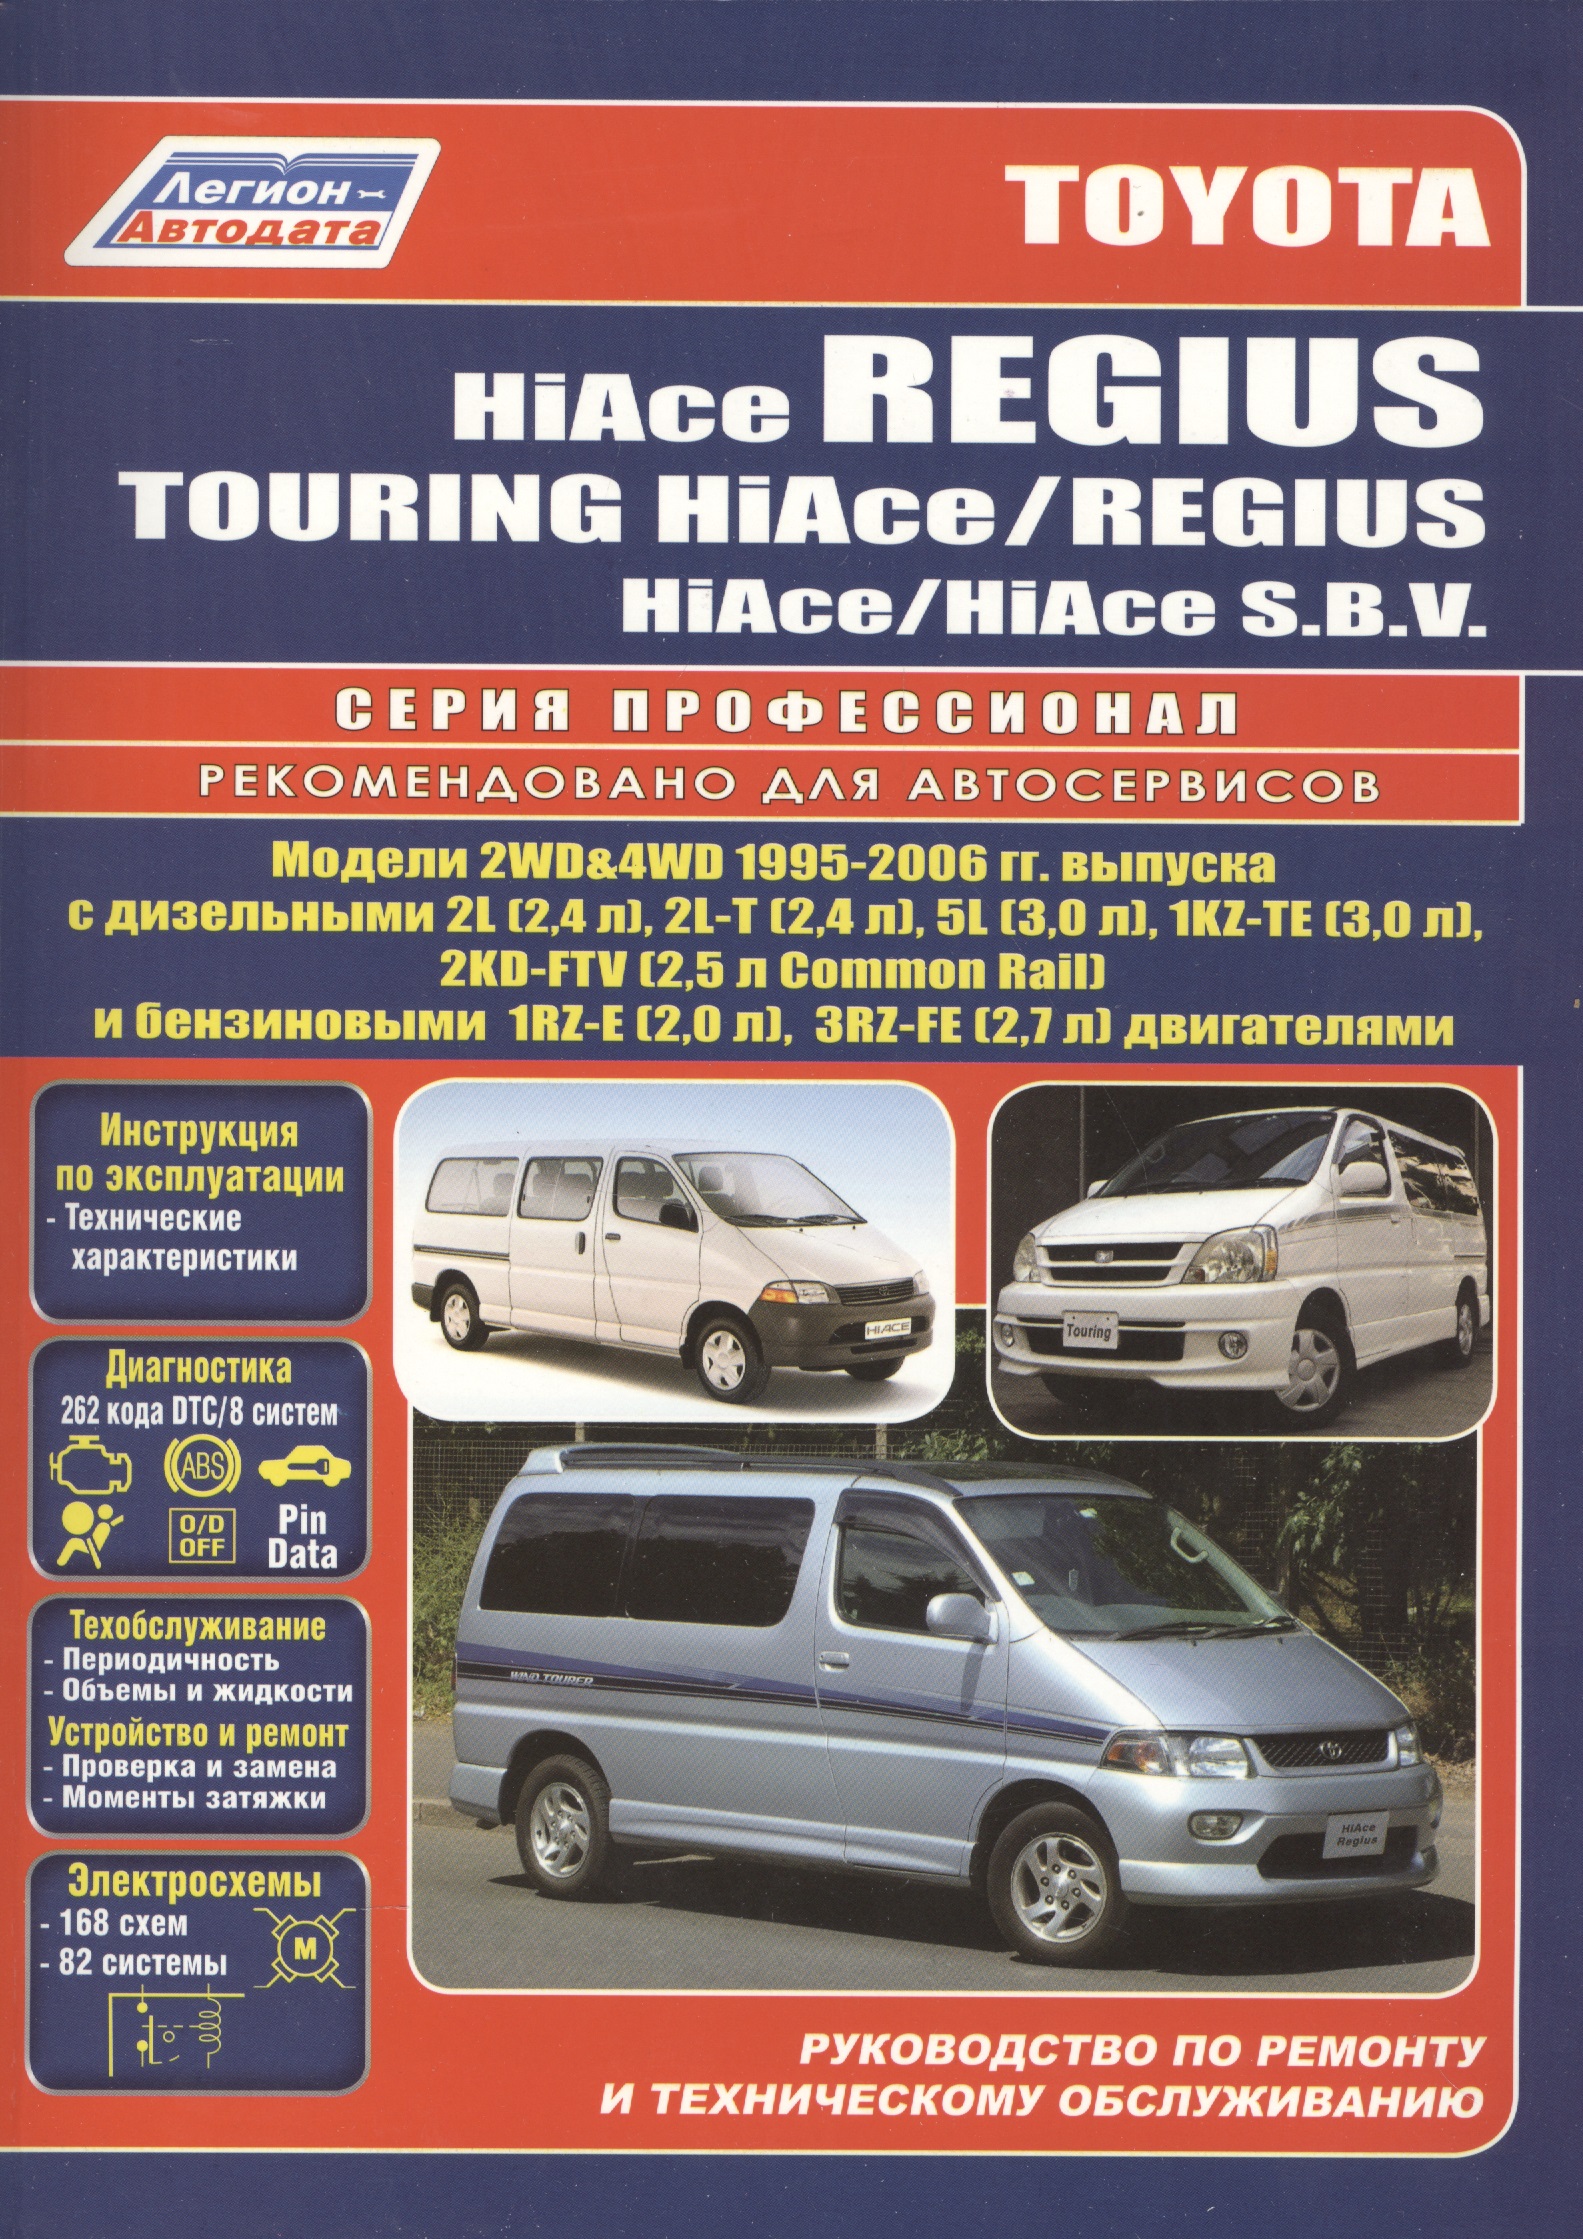 Toyota HiAce / Regius / HiAce SBV. Модели 2WD&4WD 1995-2006 гг. выпуска с дизельными 2L (2,4 л.), 2L-T (2,4 л.)… Руководство по ремонту и техническому обслуживанию автомобилей. новинка 9091905050 датчик положения коленчатого вала для toyota hilux 1kd 2kd lander cruiser hiace dyna 90919 05050 cs1673 0296001151